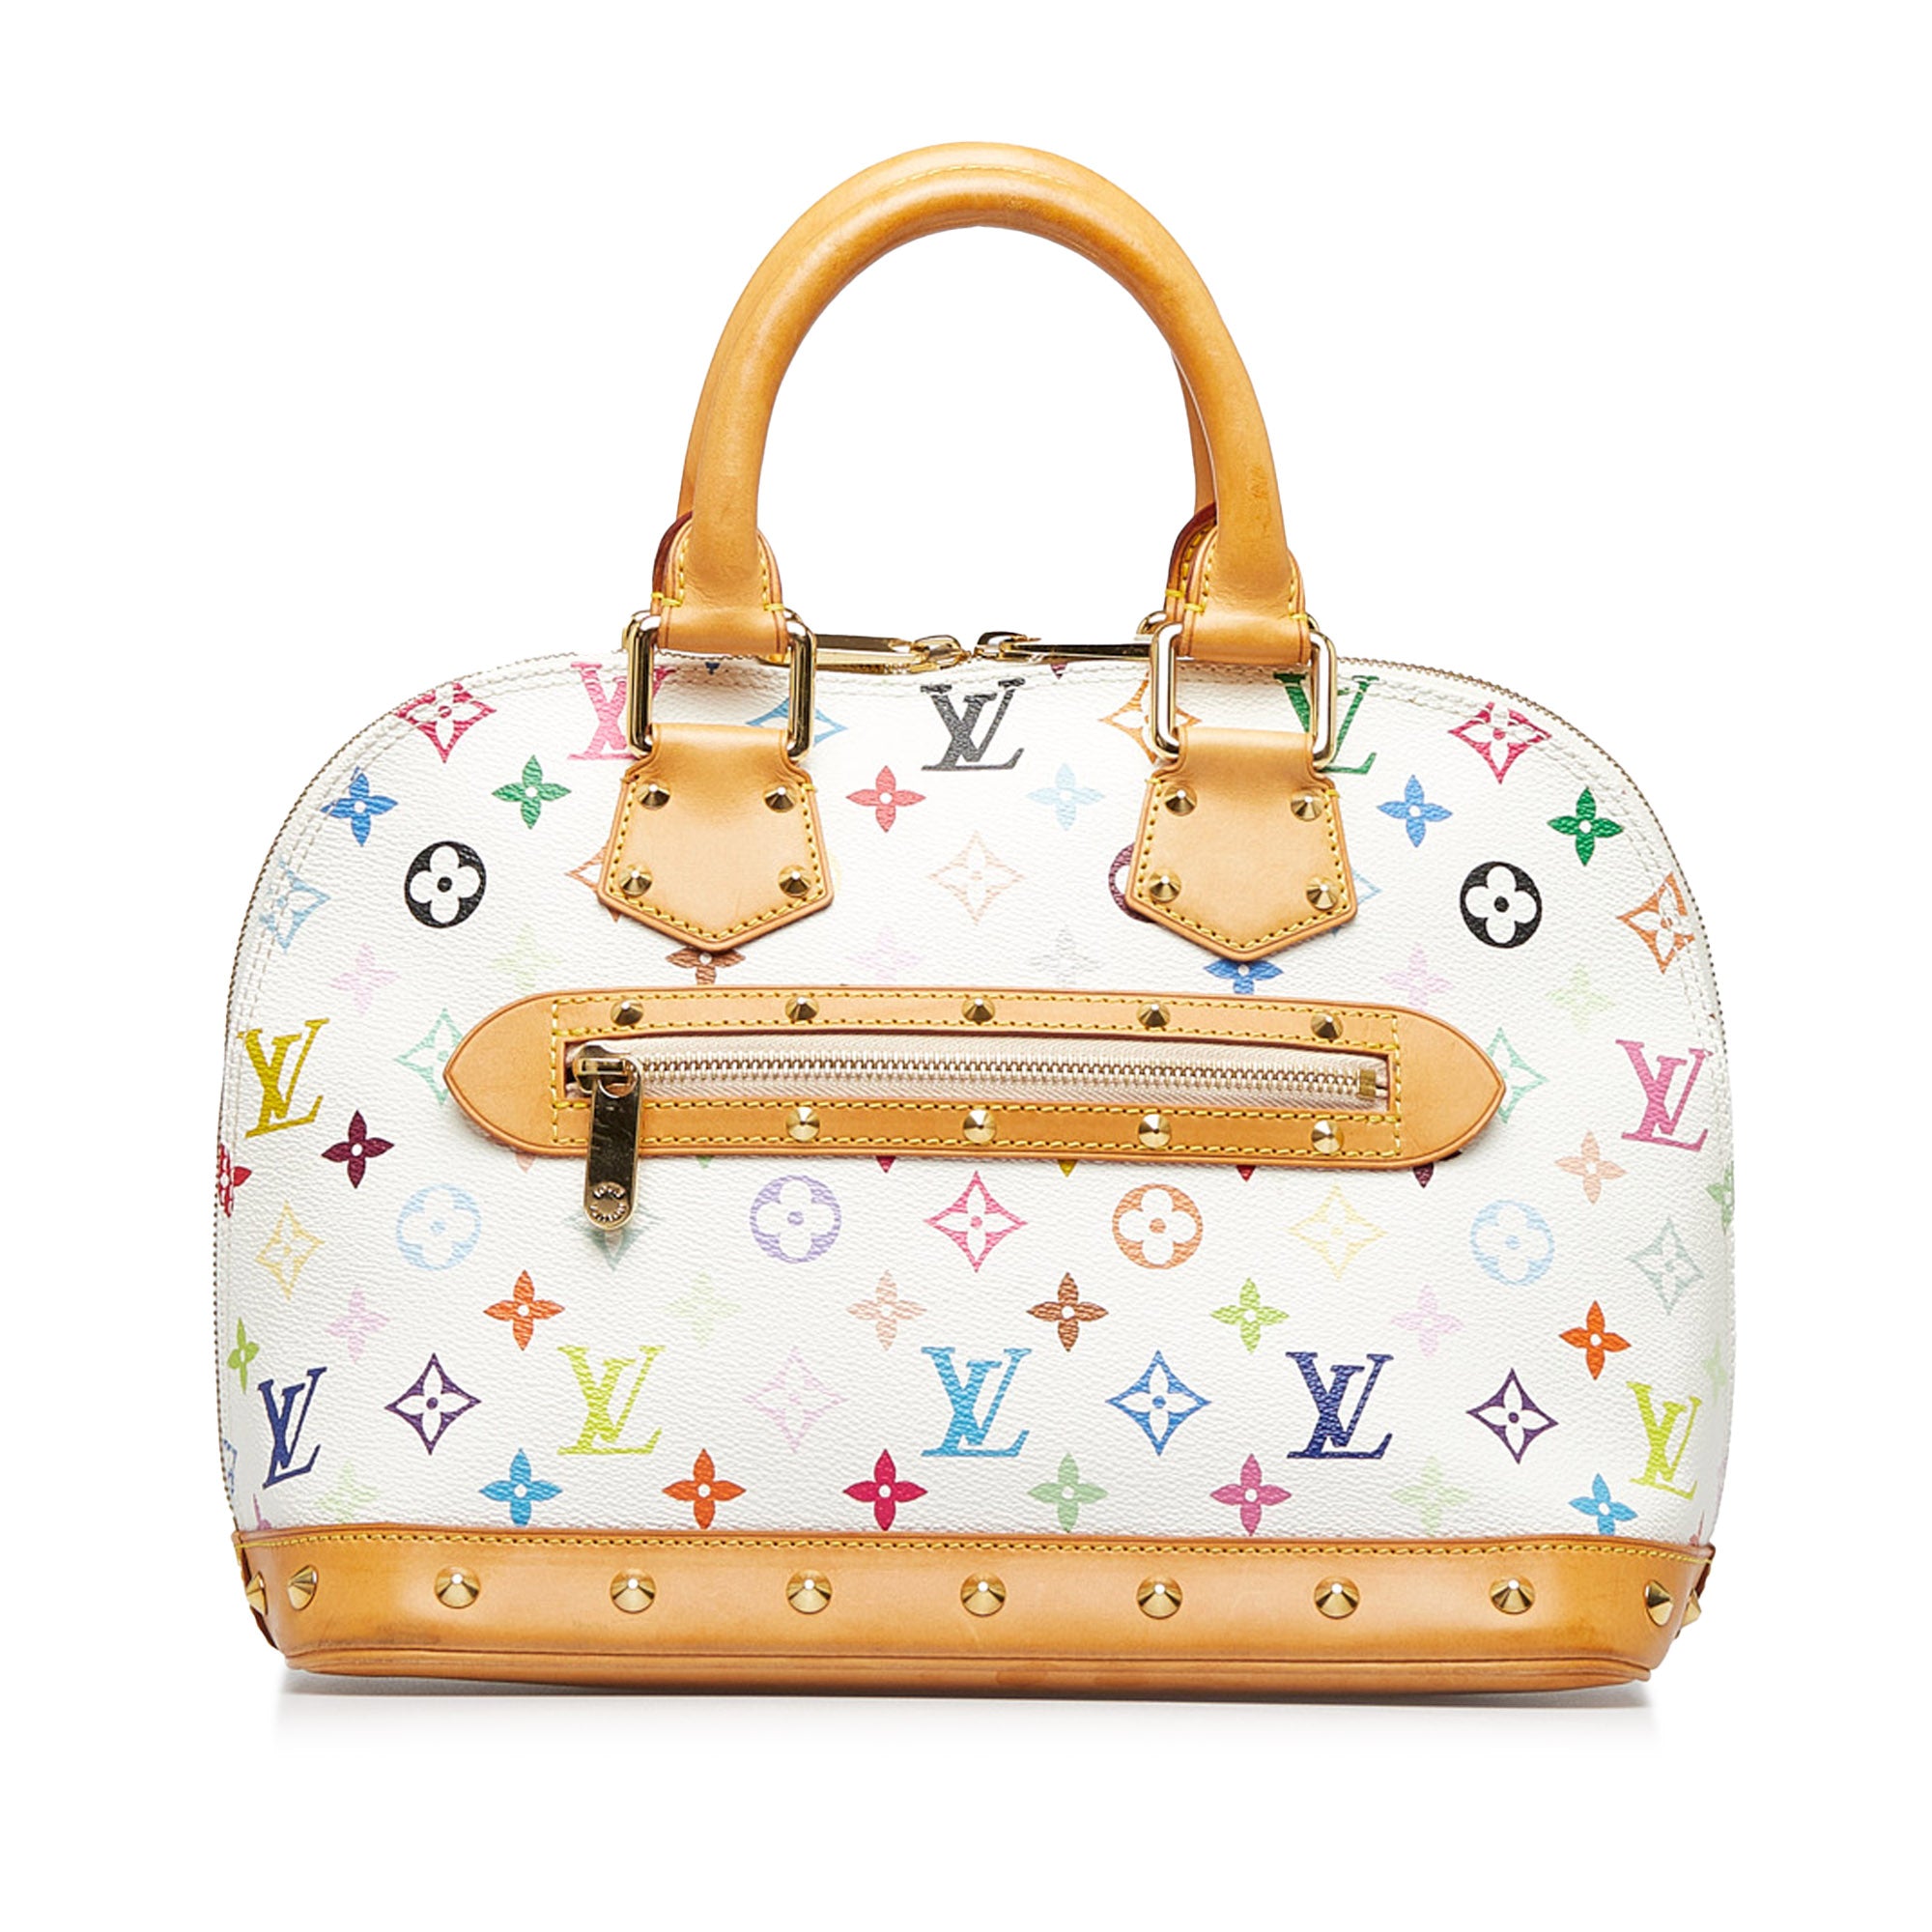 Louis Vuitton Alma Small Model Handbag in Multicolor and White